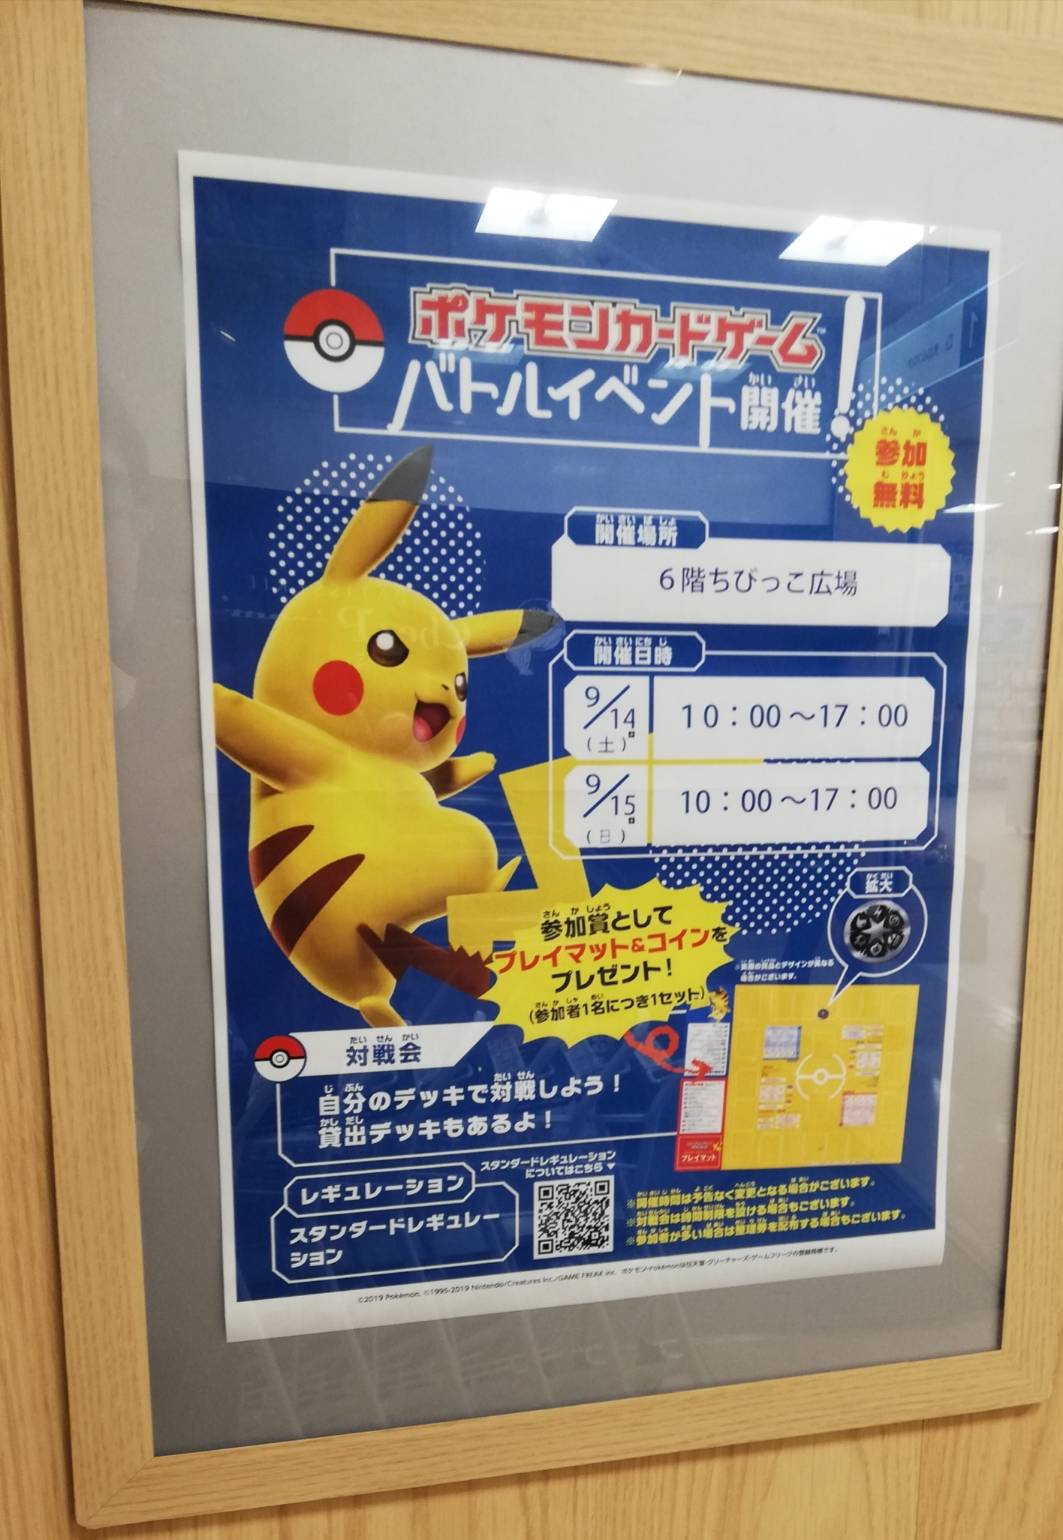 松戸イトーヨーカドーでポケモンカードゲームイベント 貸出デッキも有り 松戸ロード 松戸の地域情報